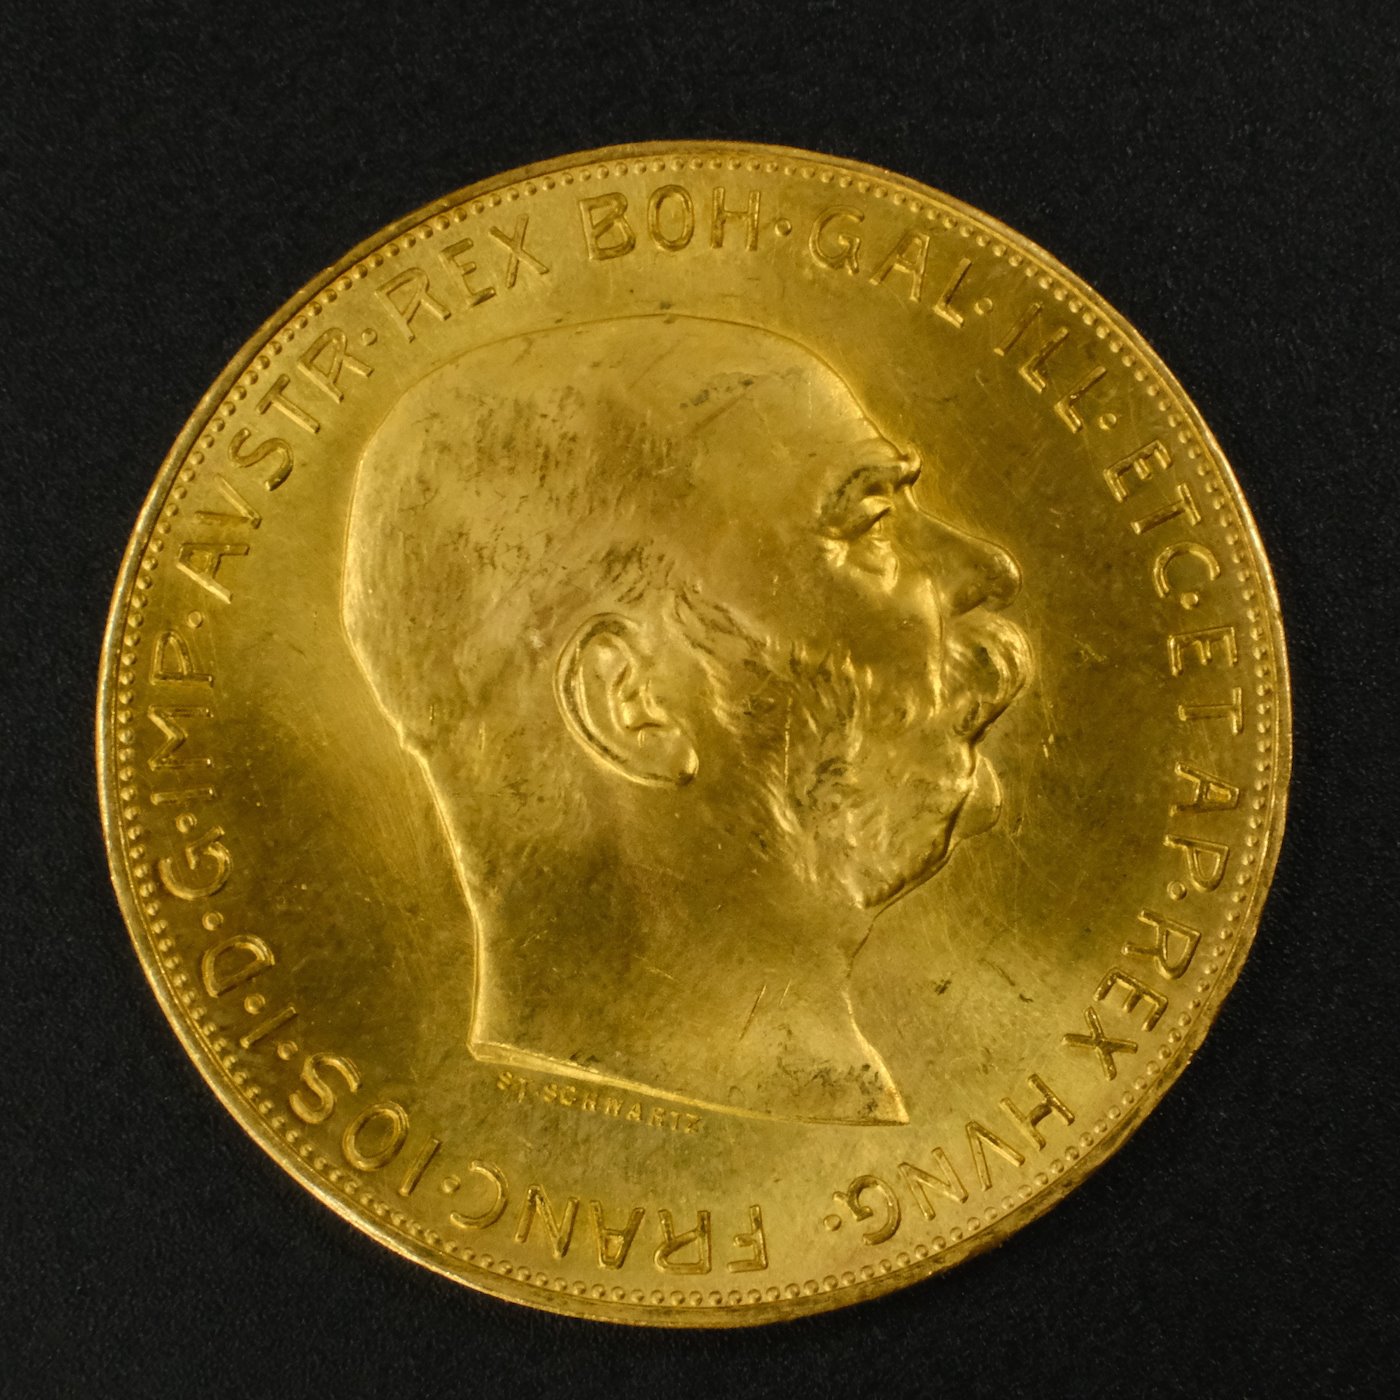 Mince - Rakousko Uhersko zlatá 100 Koruna  1915 pokračující ražba, zlato 900/1000, hrubá hmotnost mince 33,875g